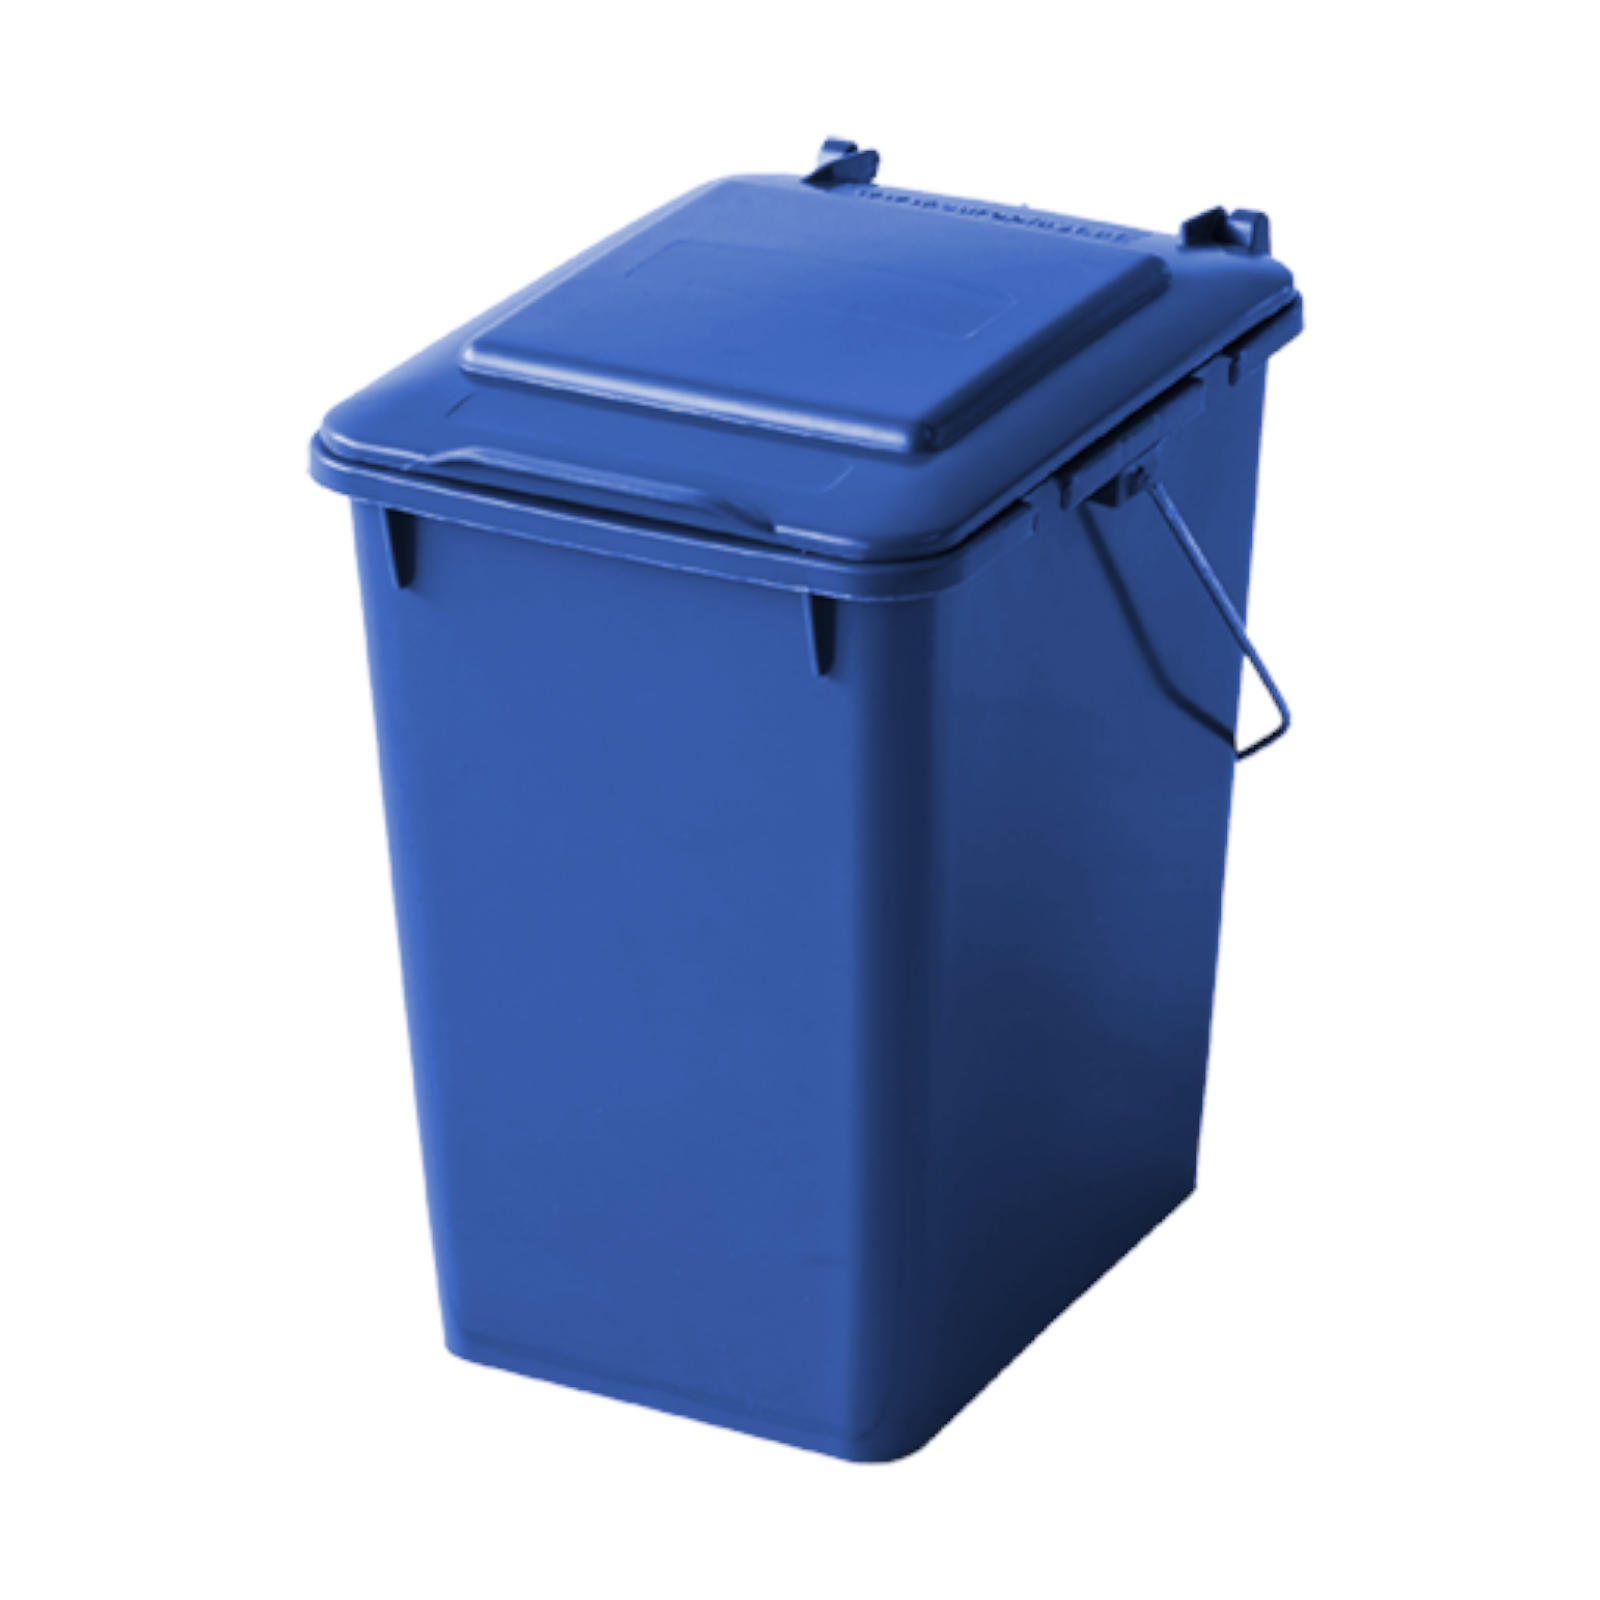 Kosz pojemnik do segregacji sortowania Å›mieci i odpadkÃ³w - niebieski 10L - sklep.odpady.org